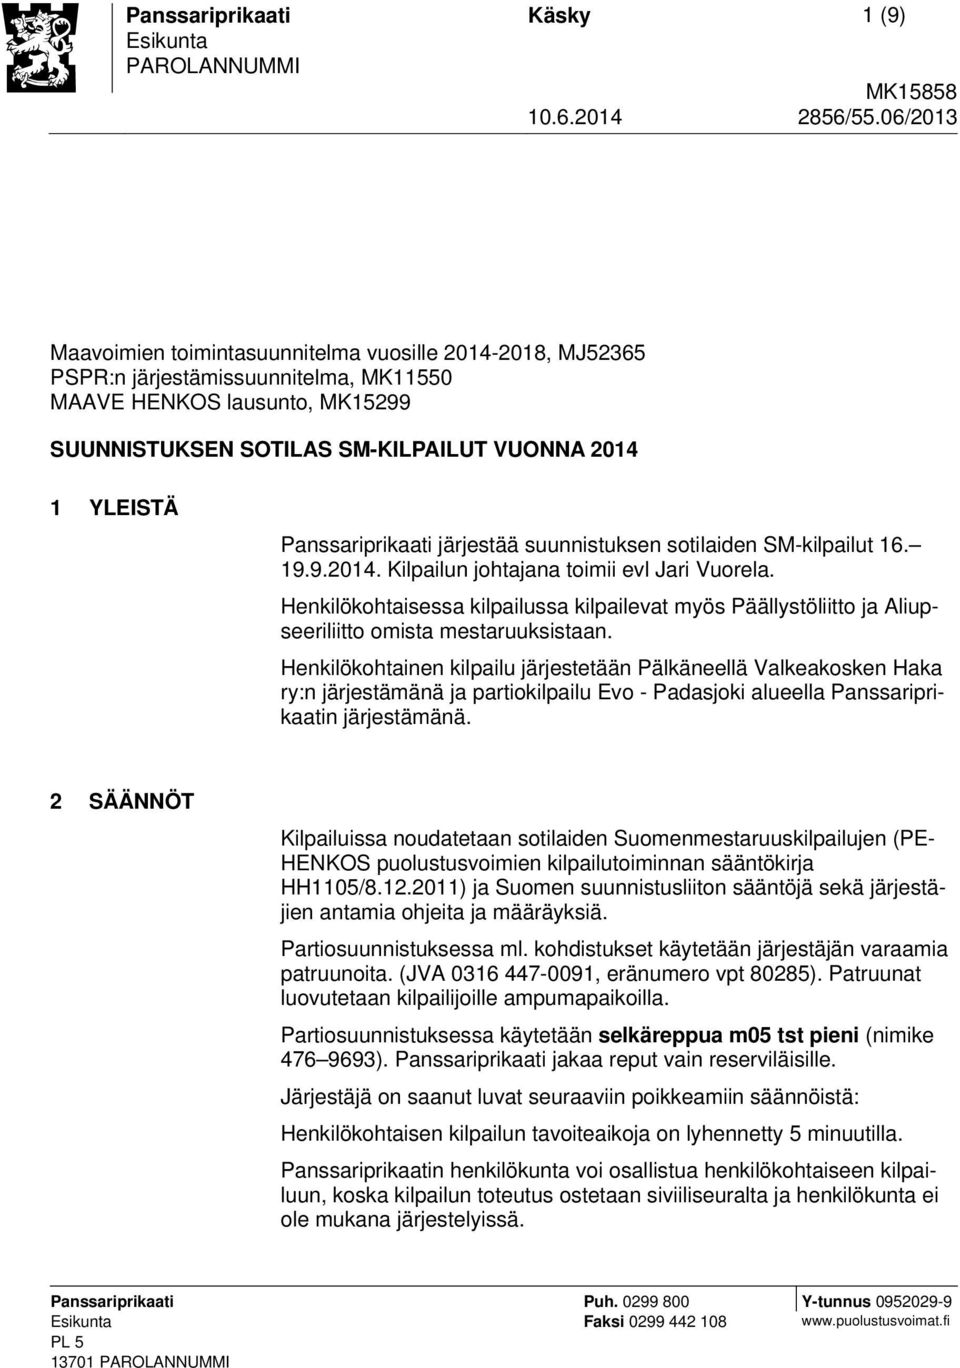 Panssariprikaati järjestää suunnistuksen sotilaiden SM-kilpailut 16. 19.9.2014. Kilpailun johtajana toimii evl Jari Vuorela.